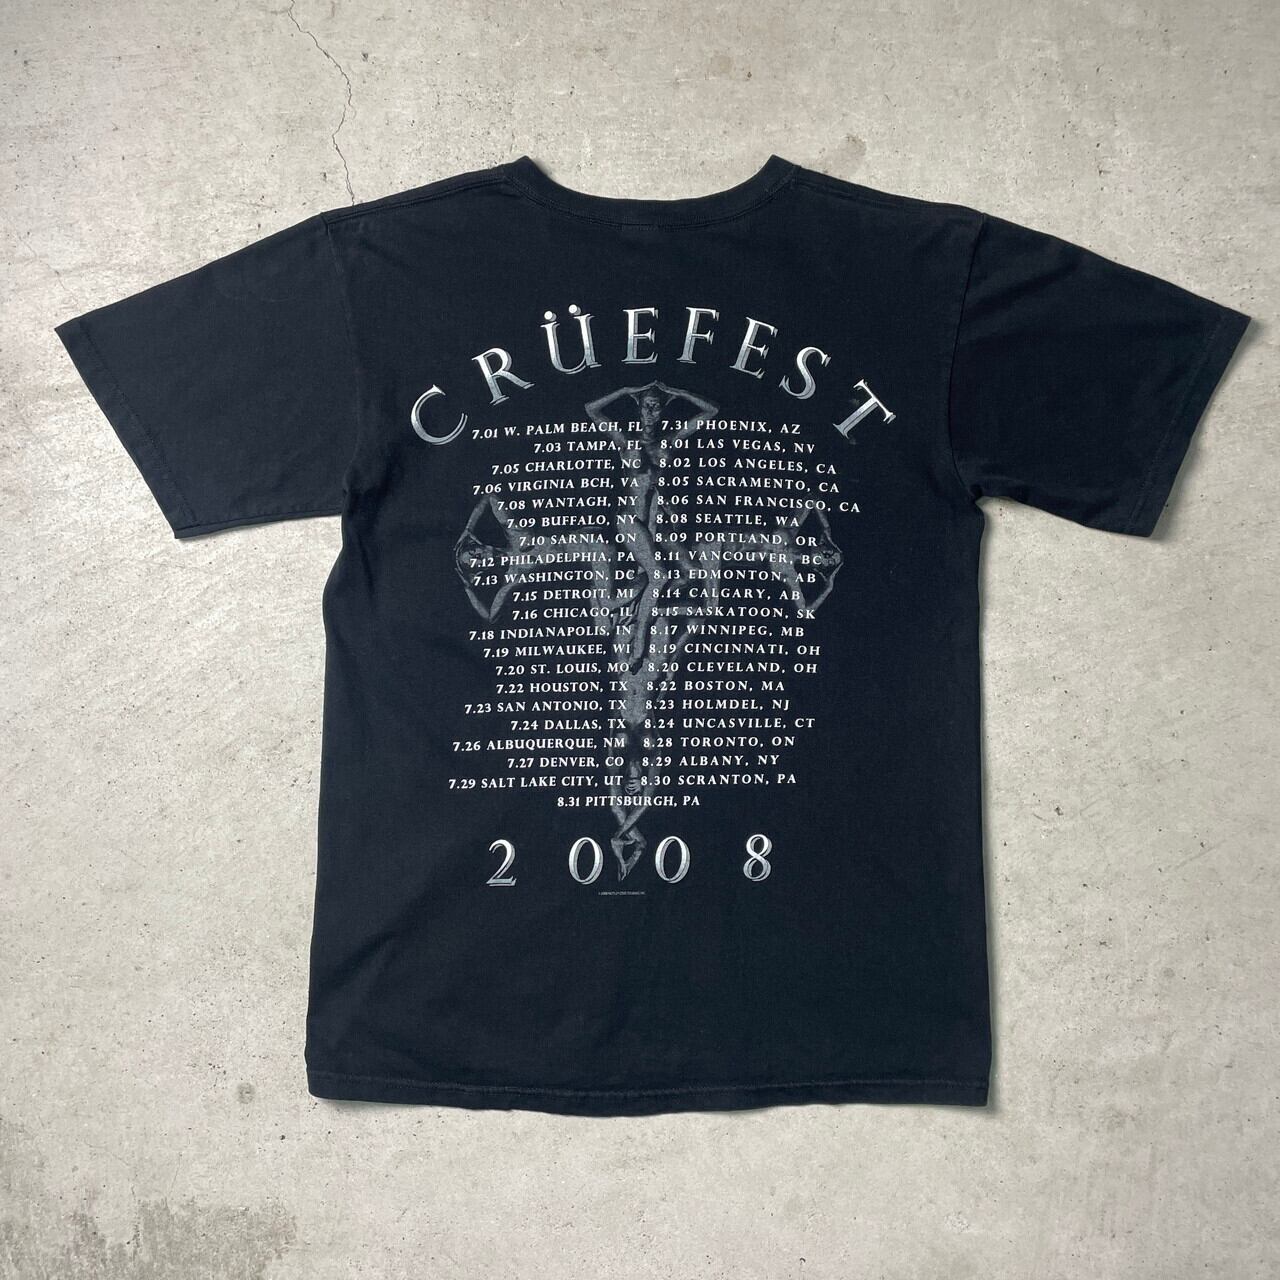 モトリー・クルー　2008ライブ限定Tシャツ　M 新品未使用　ダークグレー